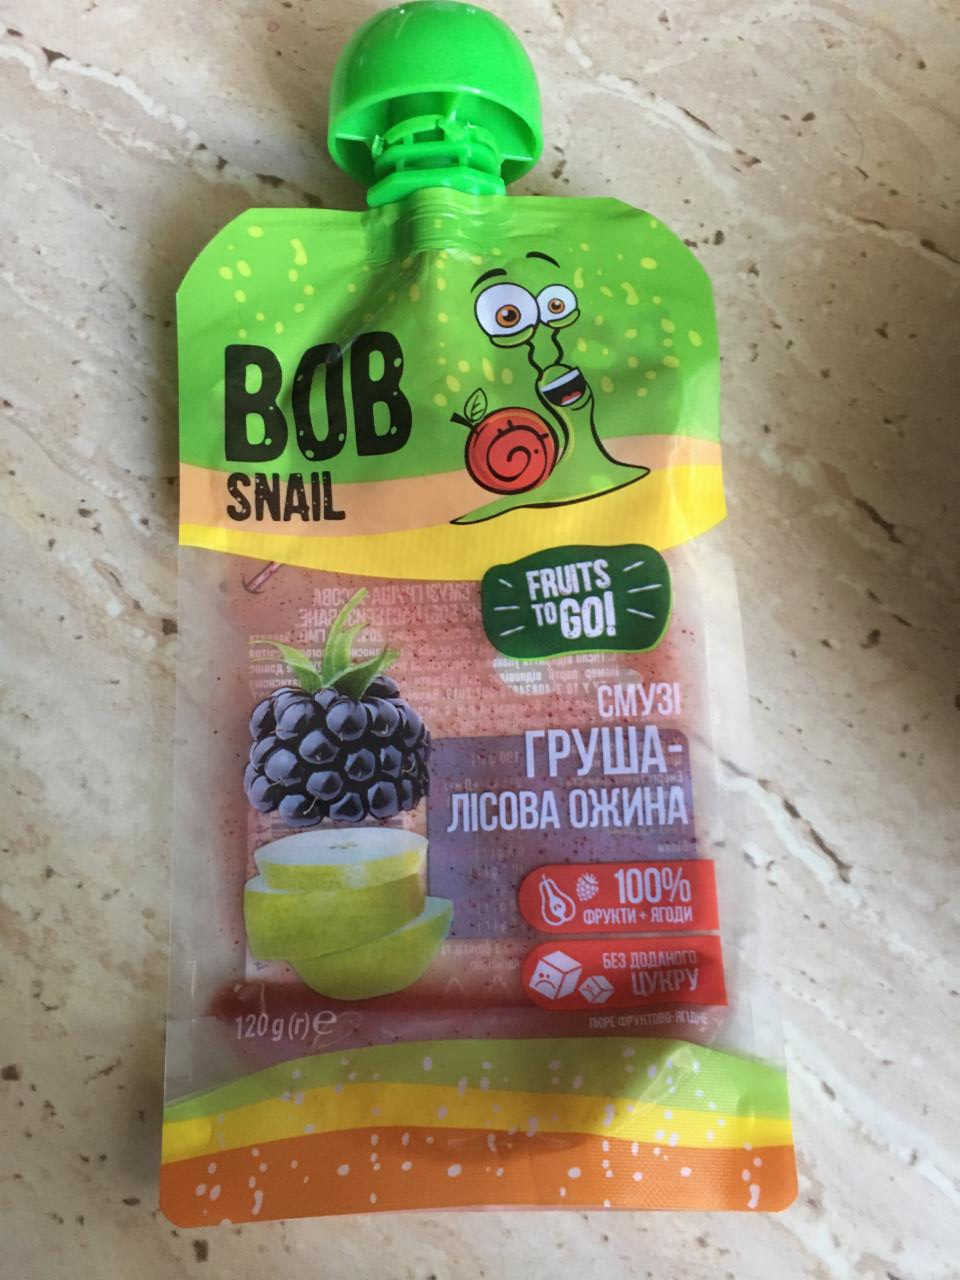 Фото - Пюре фруктове смузі груша-лісова ожина Bob Snail